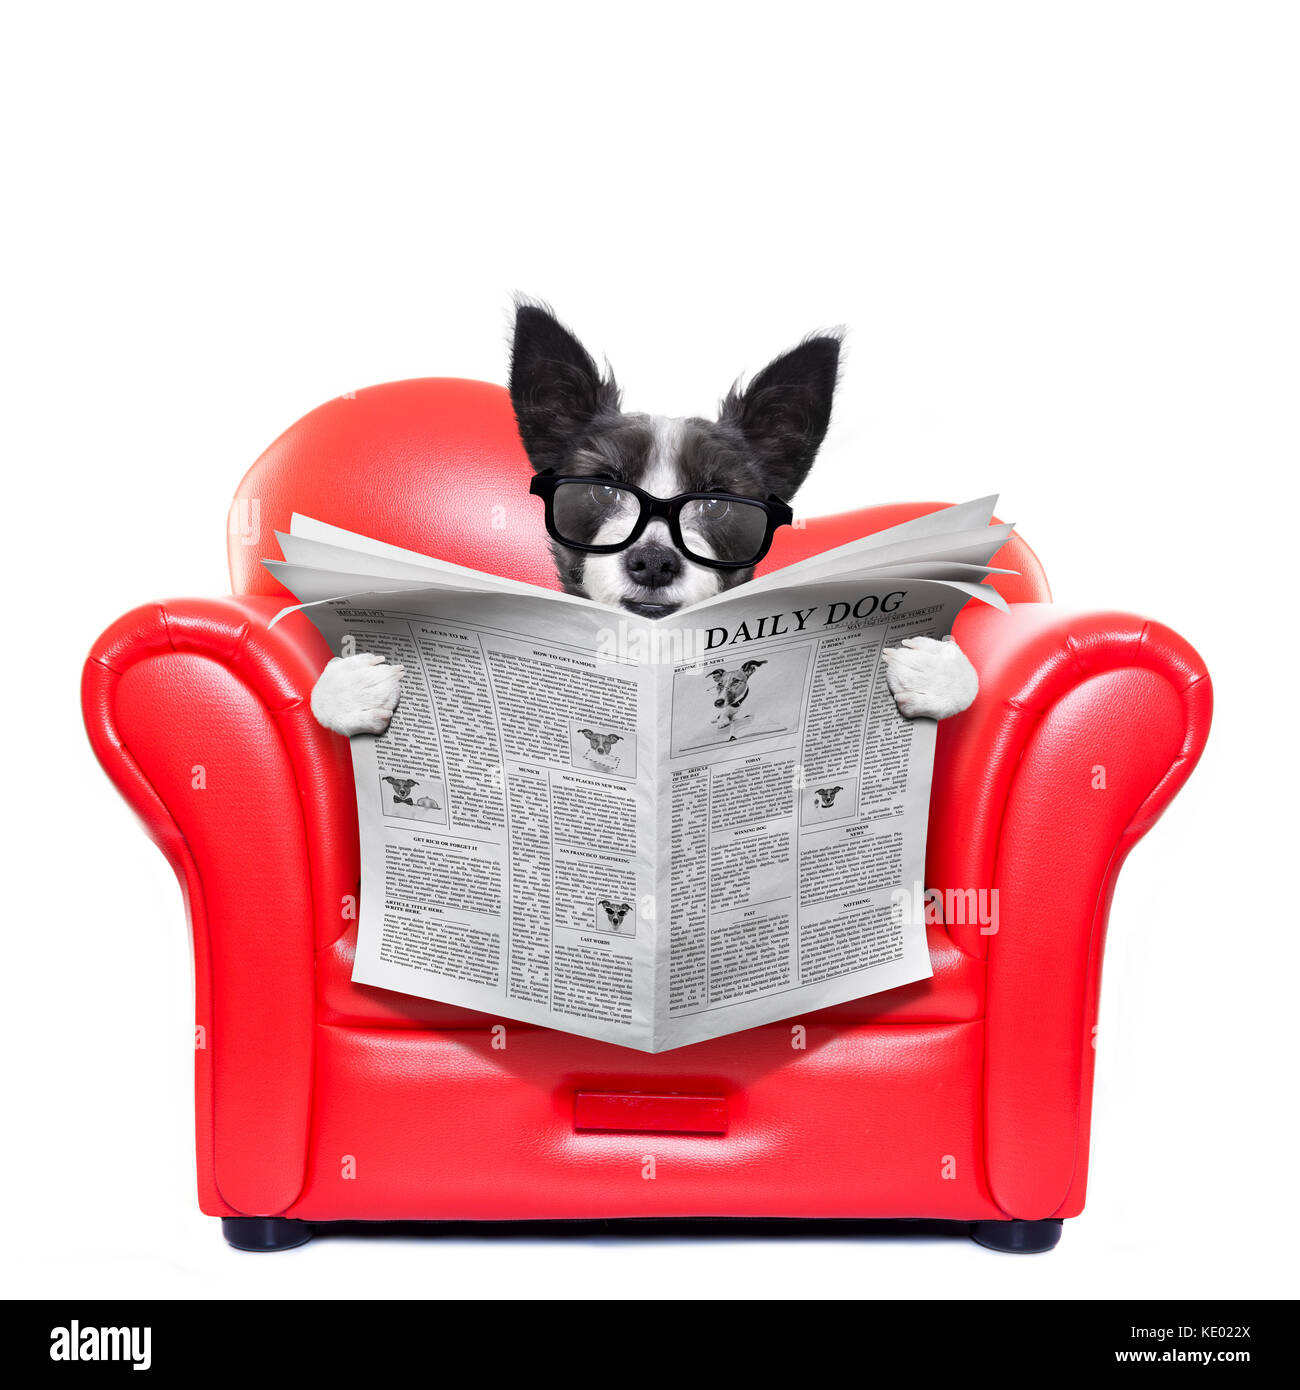 Chien terrier lecture journal sur un canapé rouge , canapé, chaise longue ou , dans la salle de séjour , isolé sur fond blanc Banque D'Images